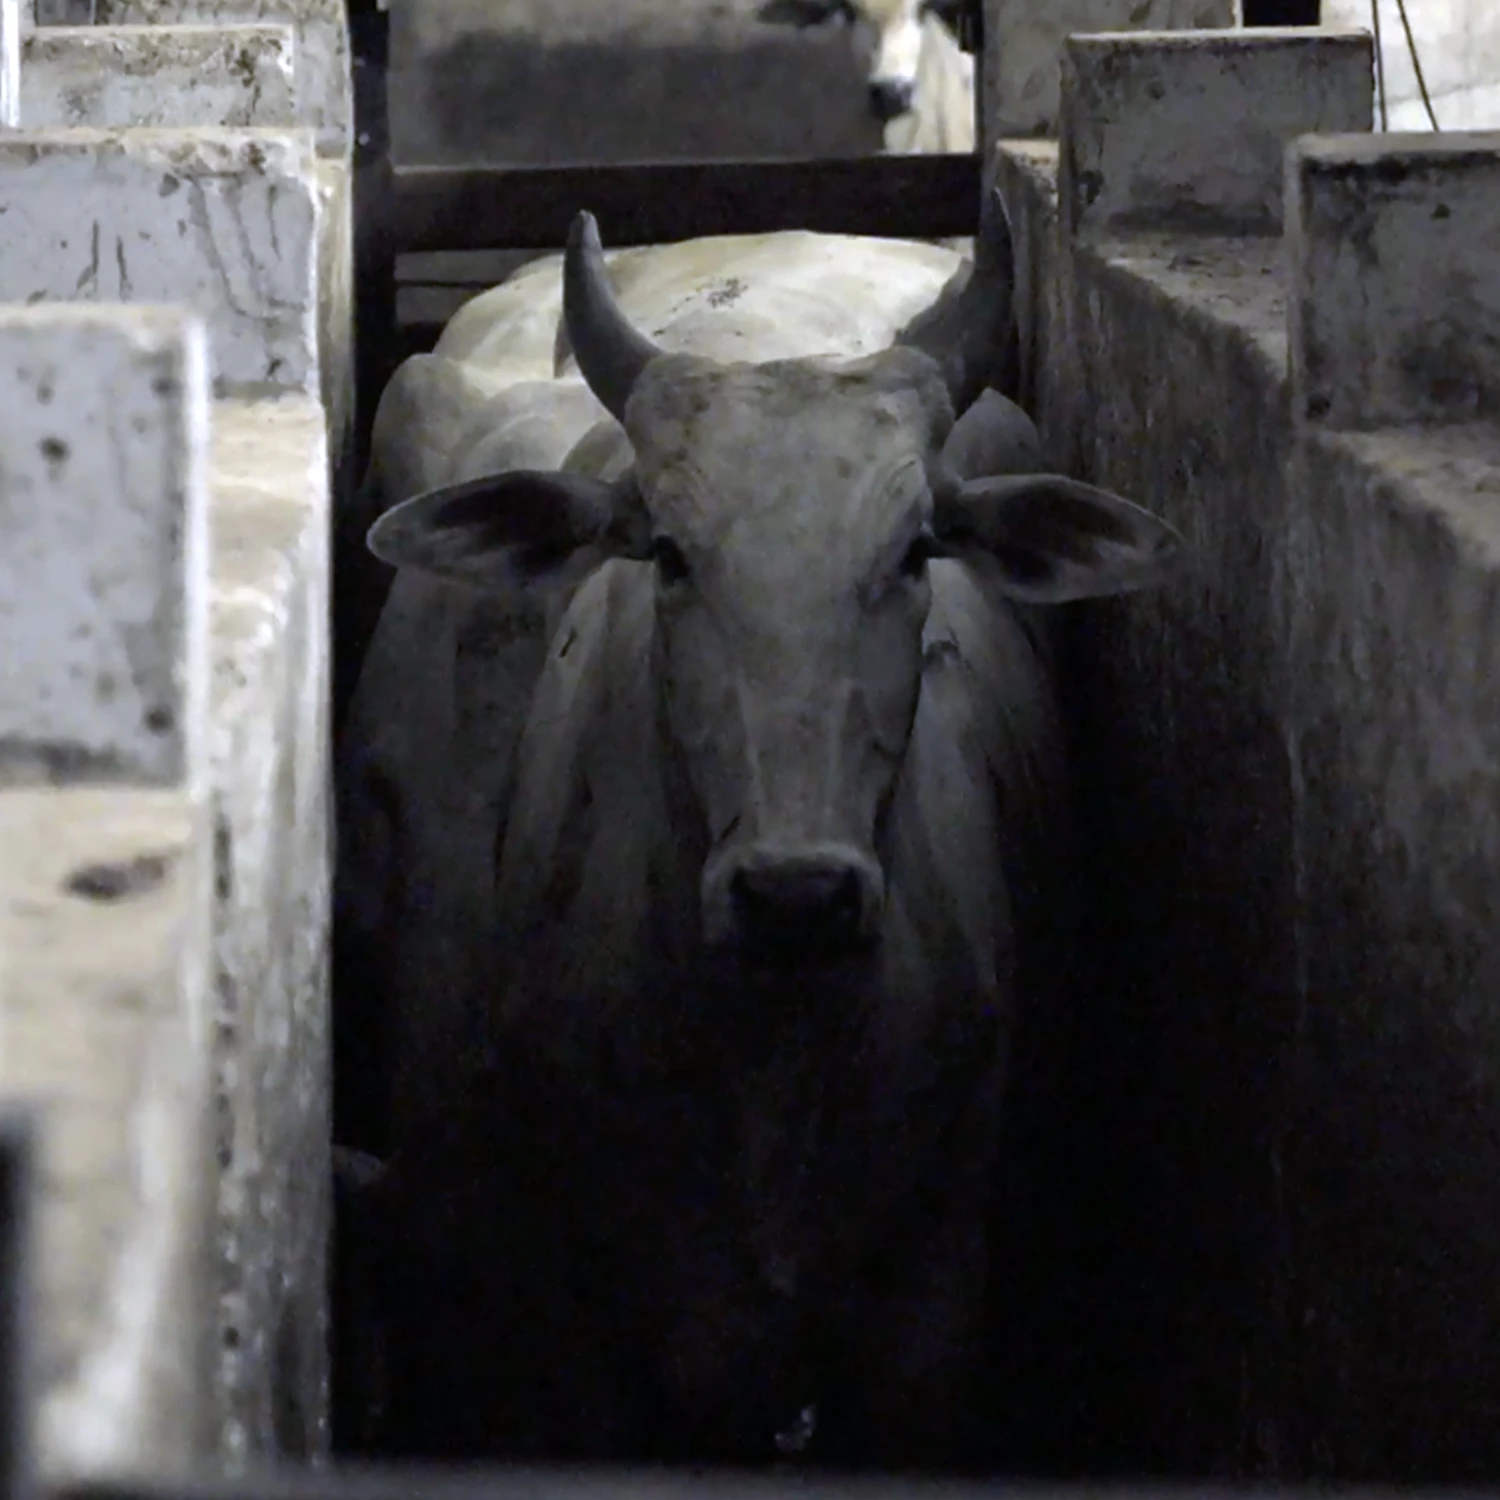 Cow inside a Brazilian slaughterhouse